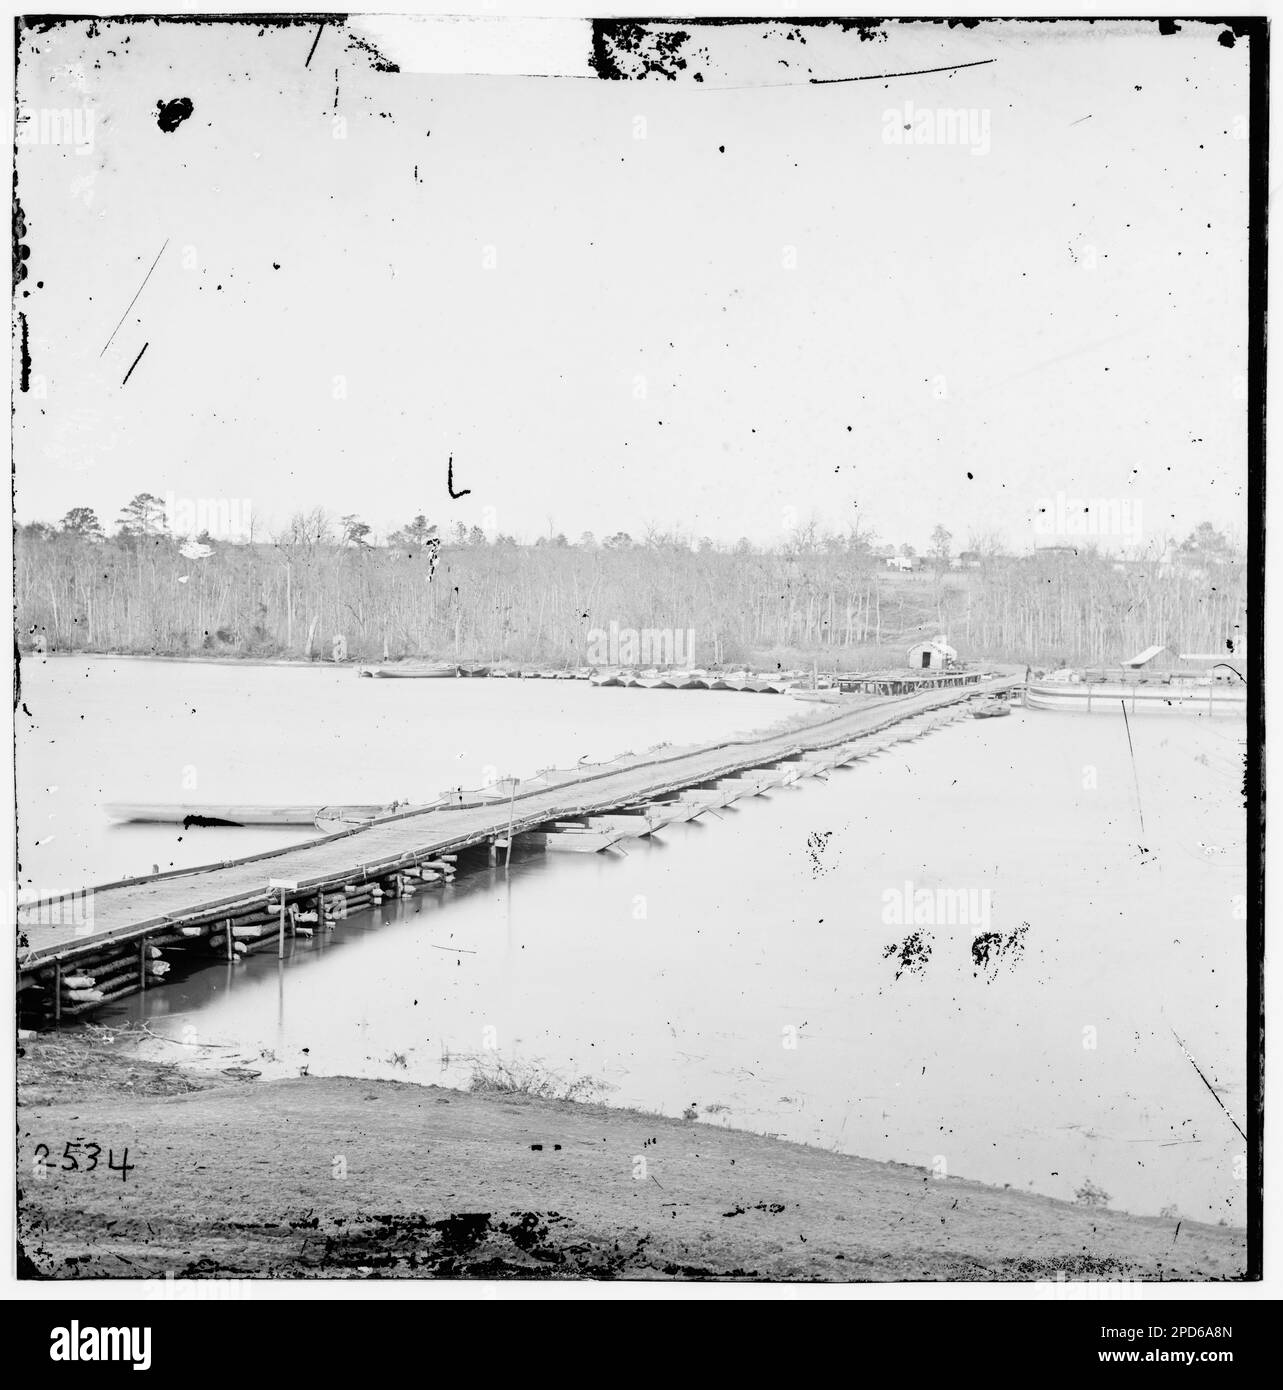 Pont ponton traversant la rivière James. Photographies de guerre civile, 1861-1865 . États-Unis, Histoire, Guerre civile, 1861-1865. Banque D'Images